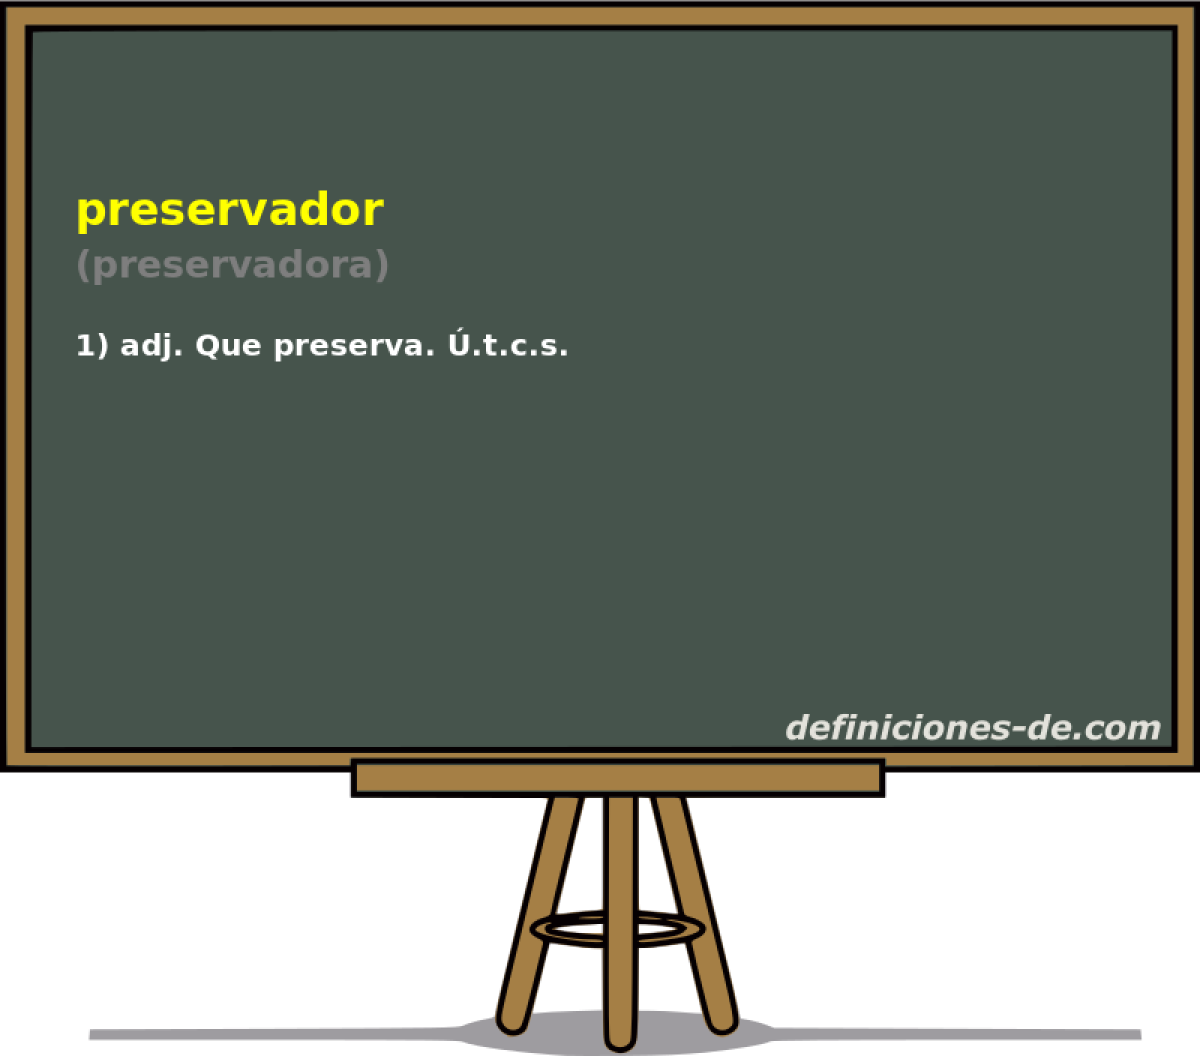 preservador (preservadora)